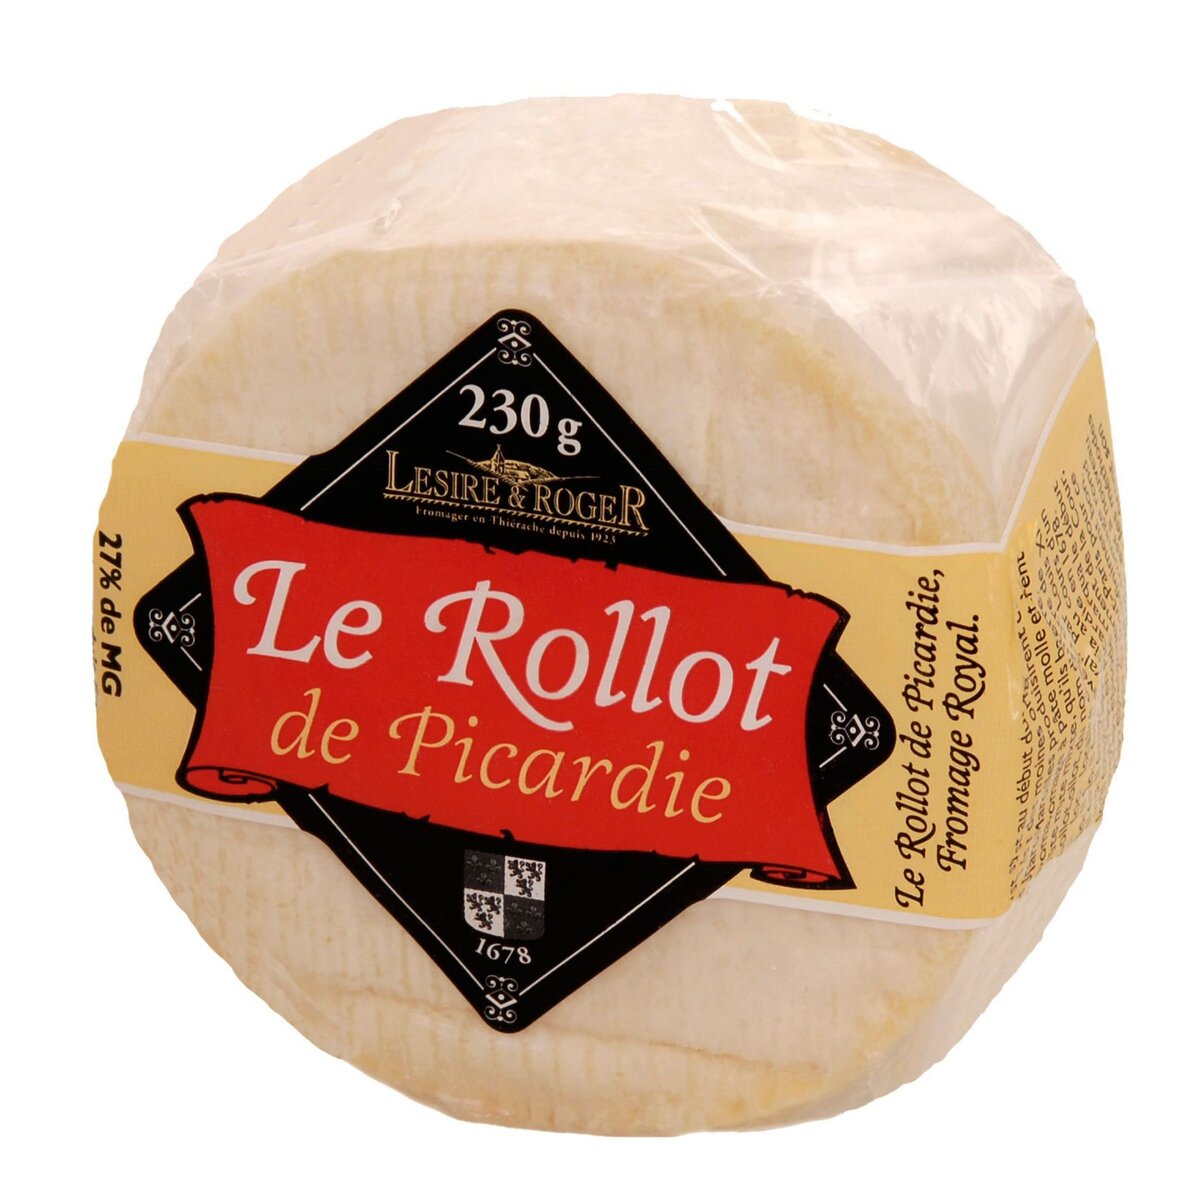 LESIRE Fromage le Rollot de Picardie 230g